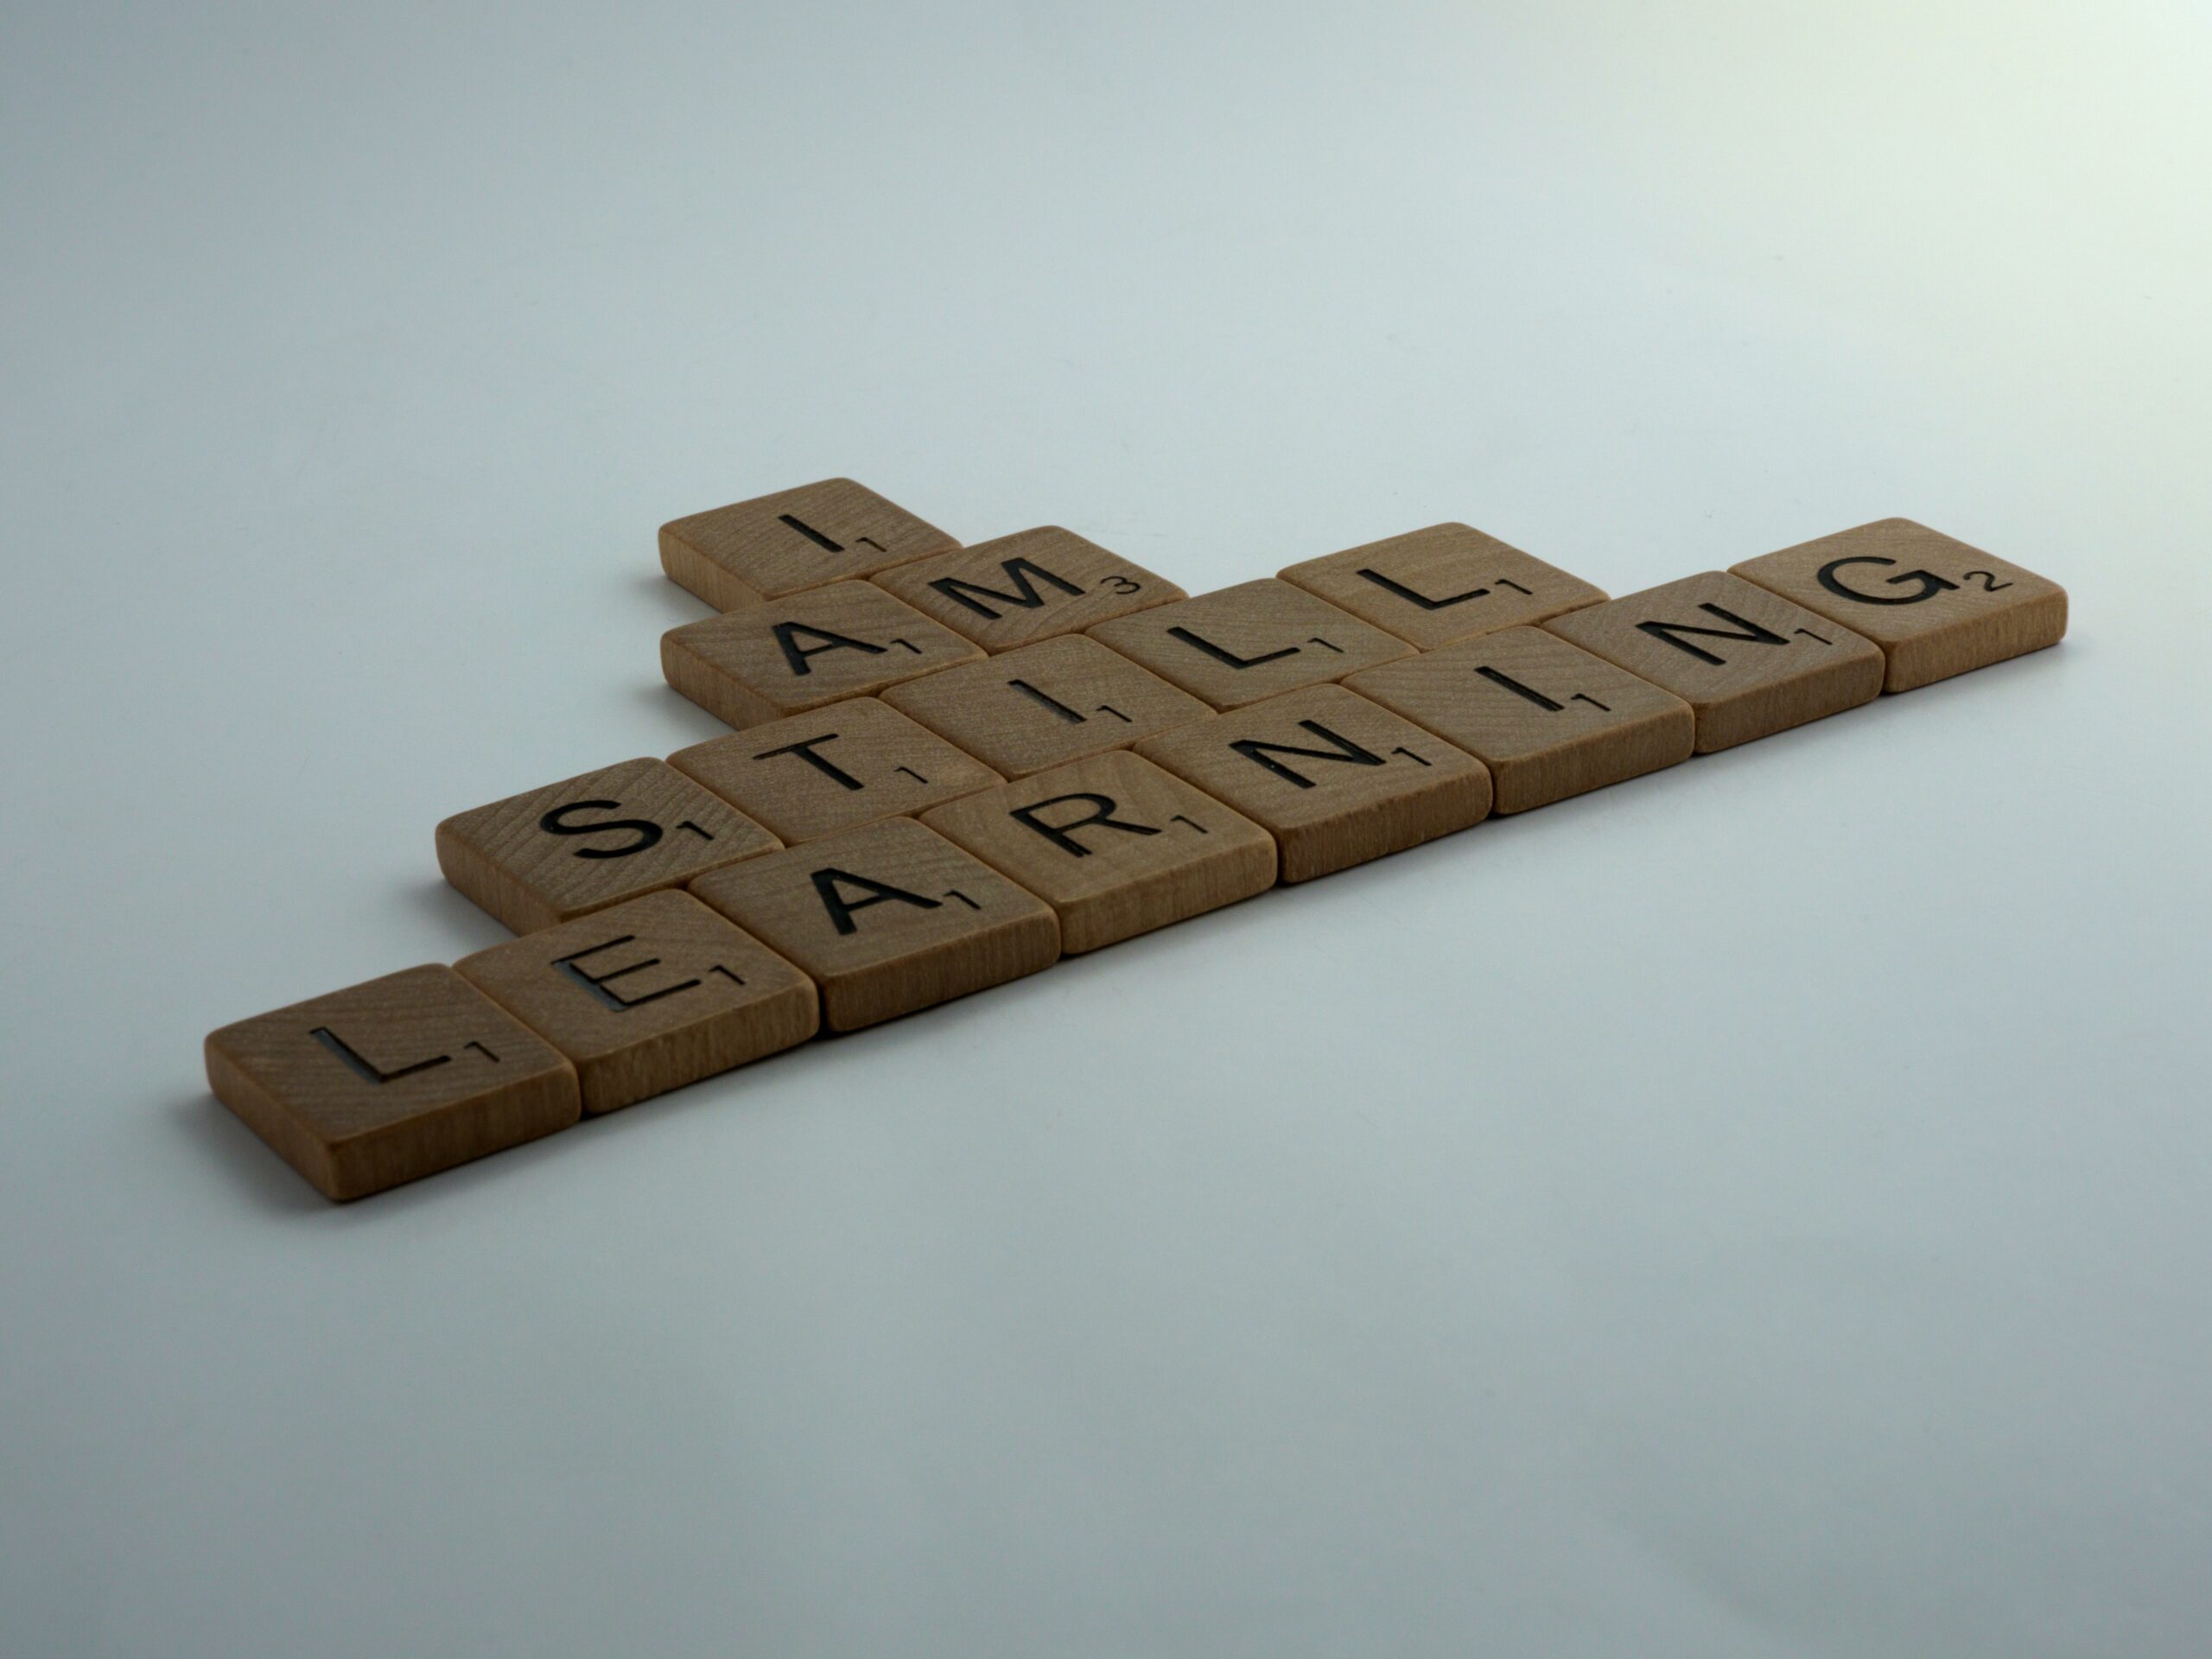 Image of letter tiles spelling "I am still learning"